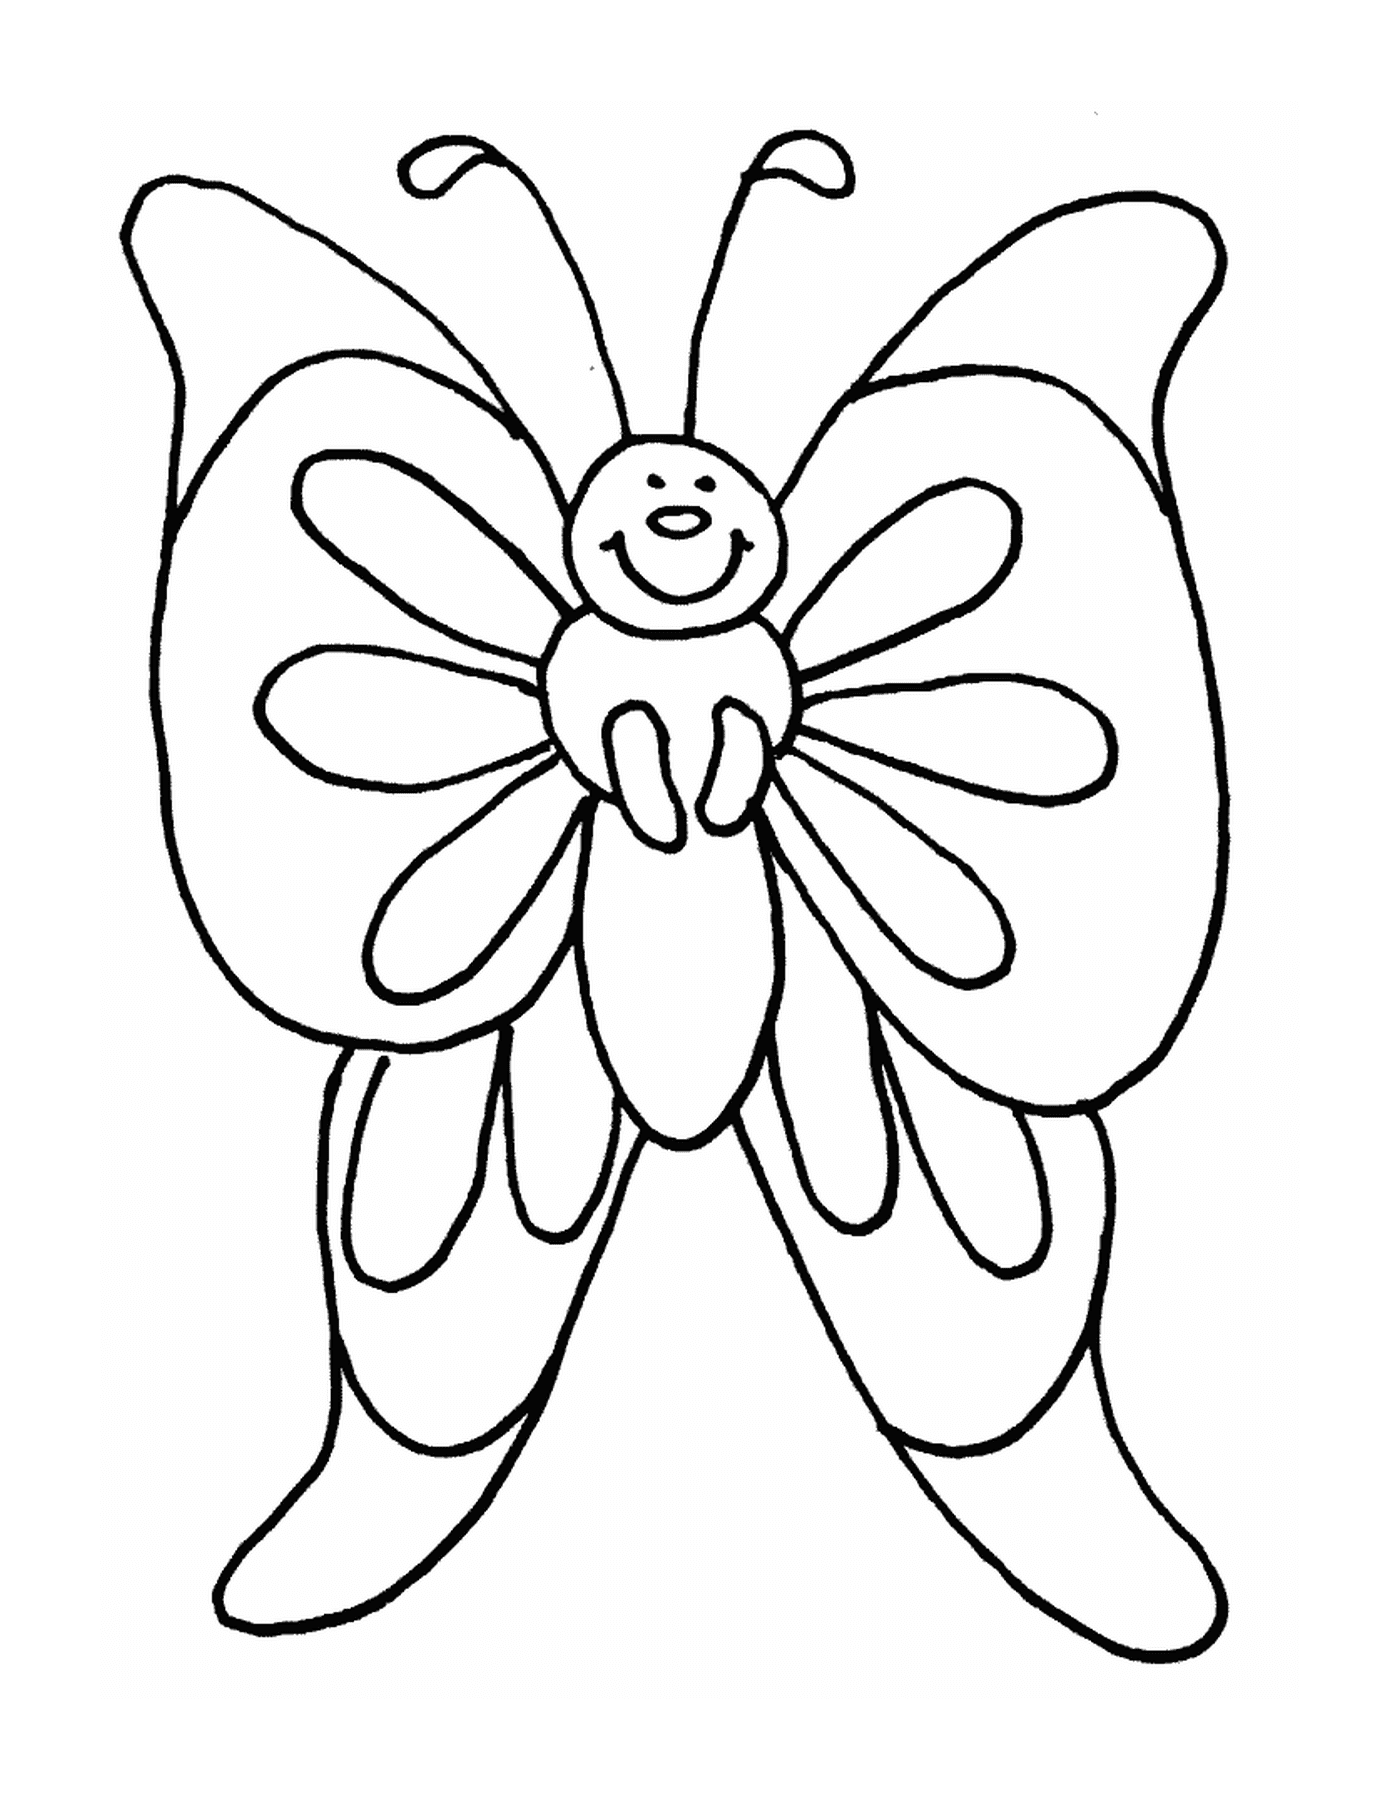  Mariposa delicada con alas traslúcidas 